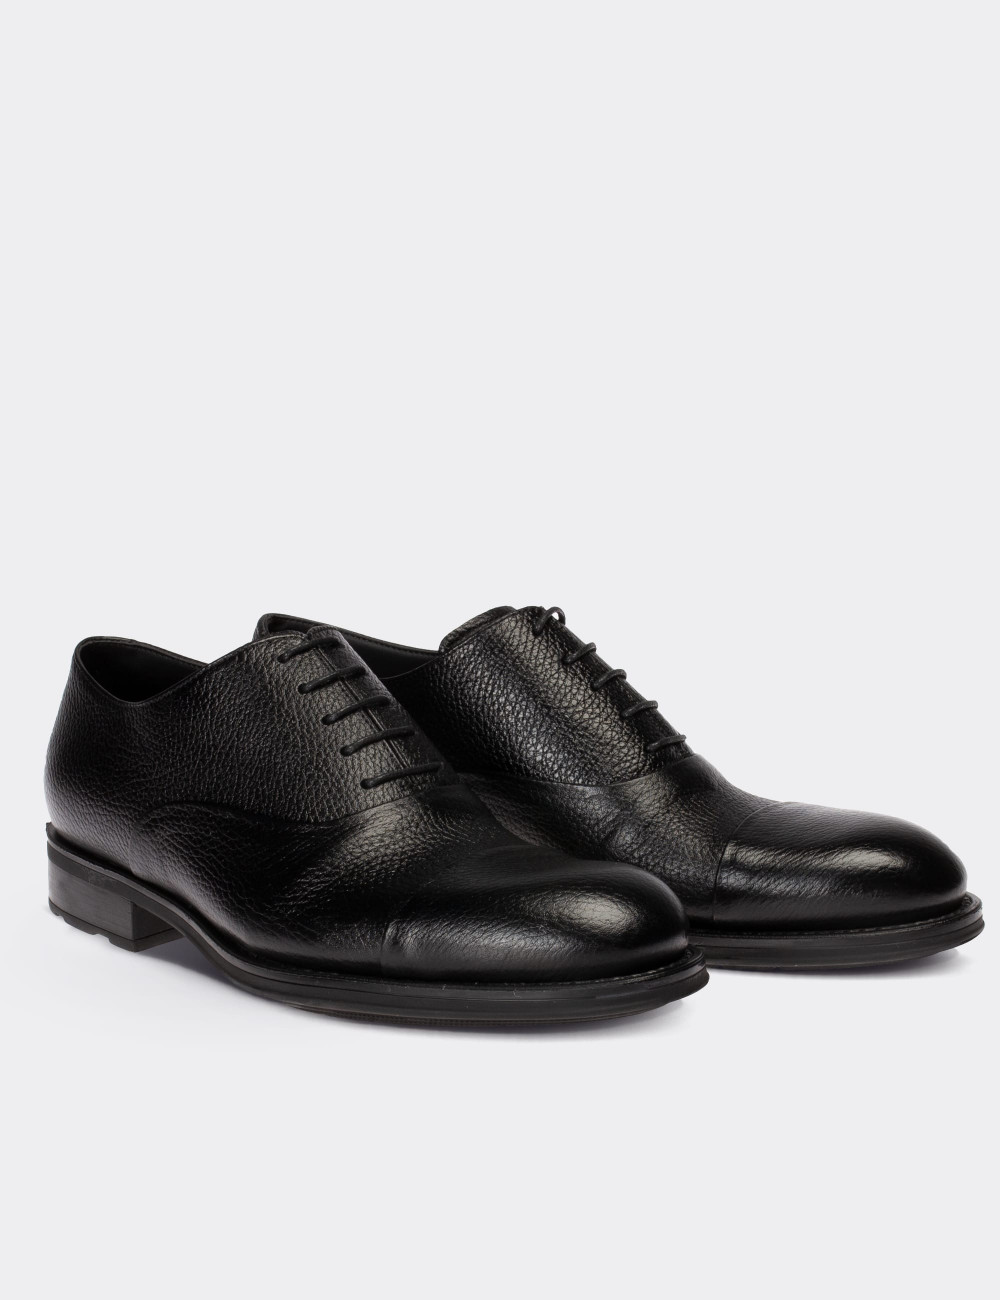 Hakiki Deri Siyah Klasik Erkek Ayakkabı - 01026MSYHC06